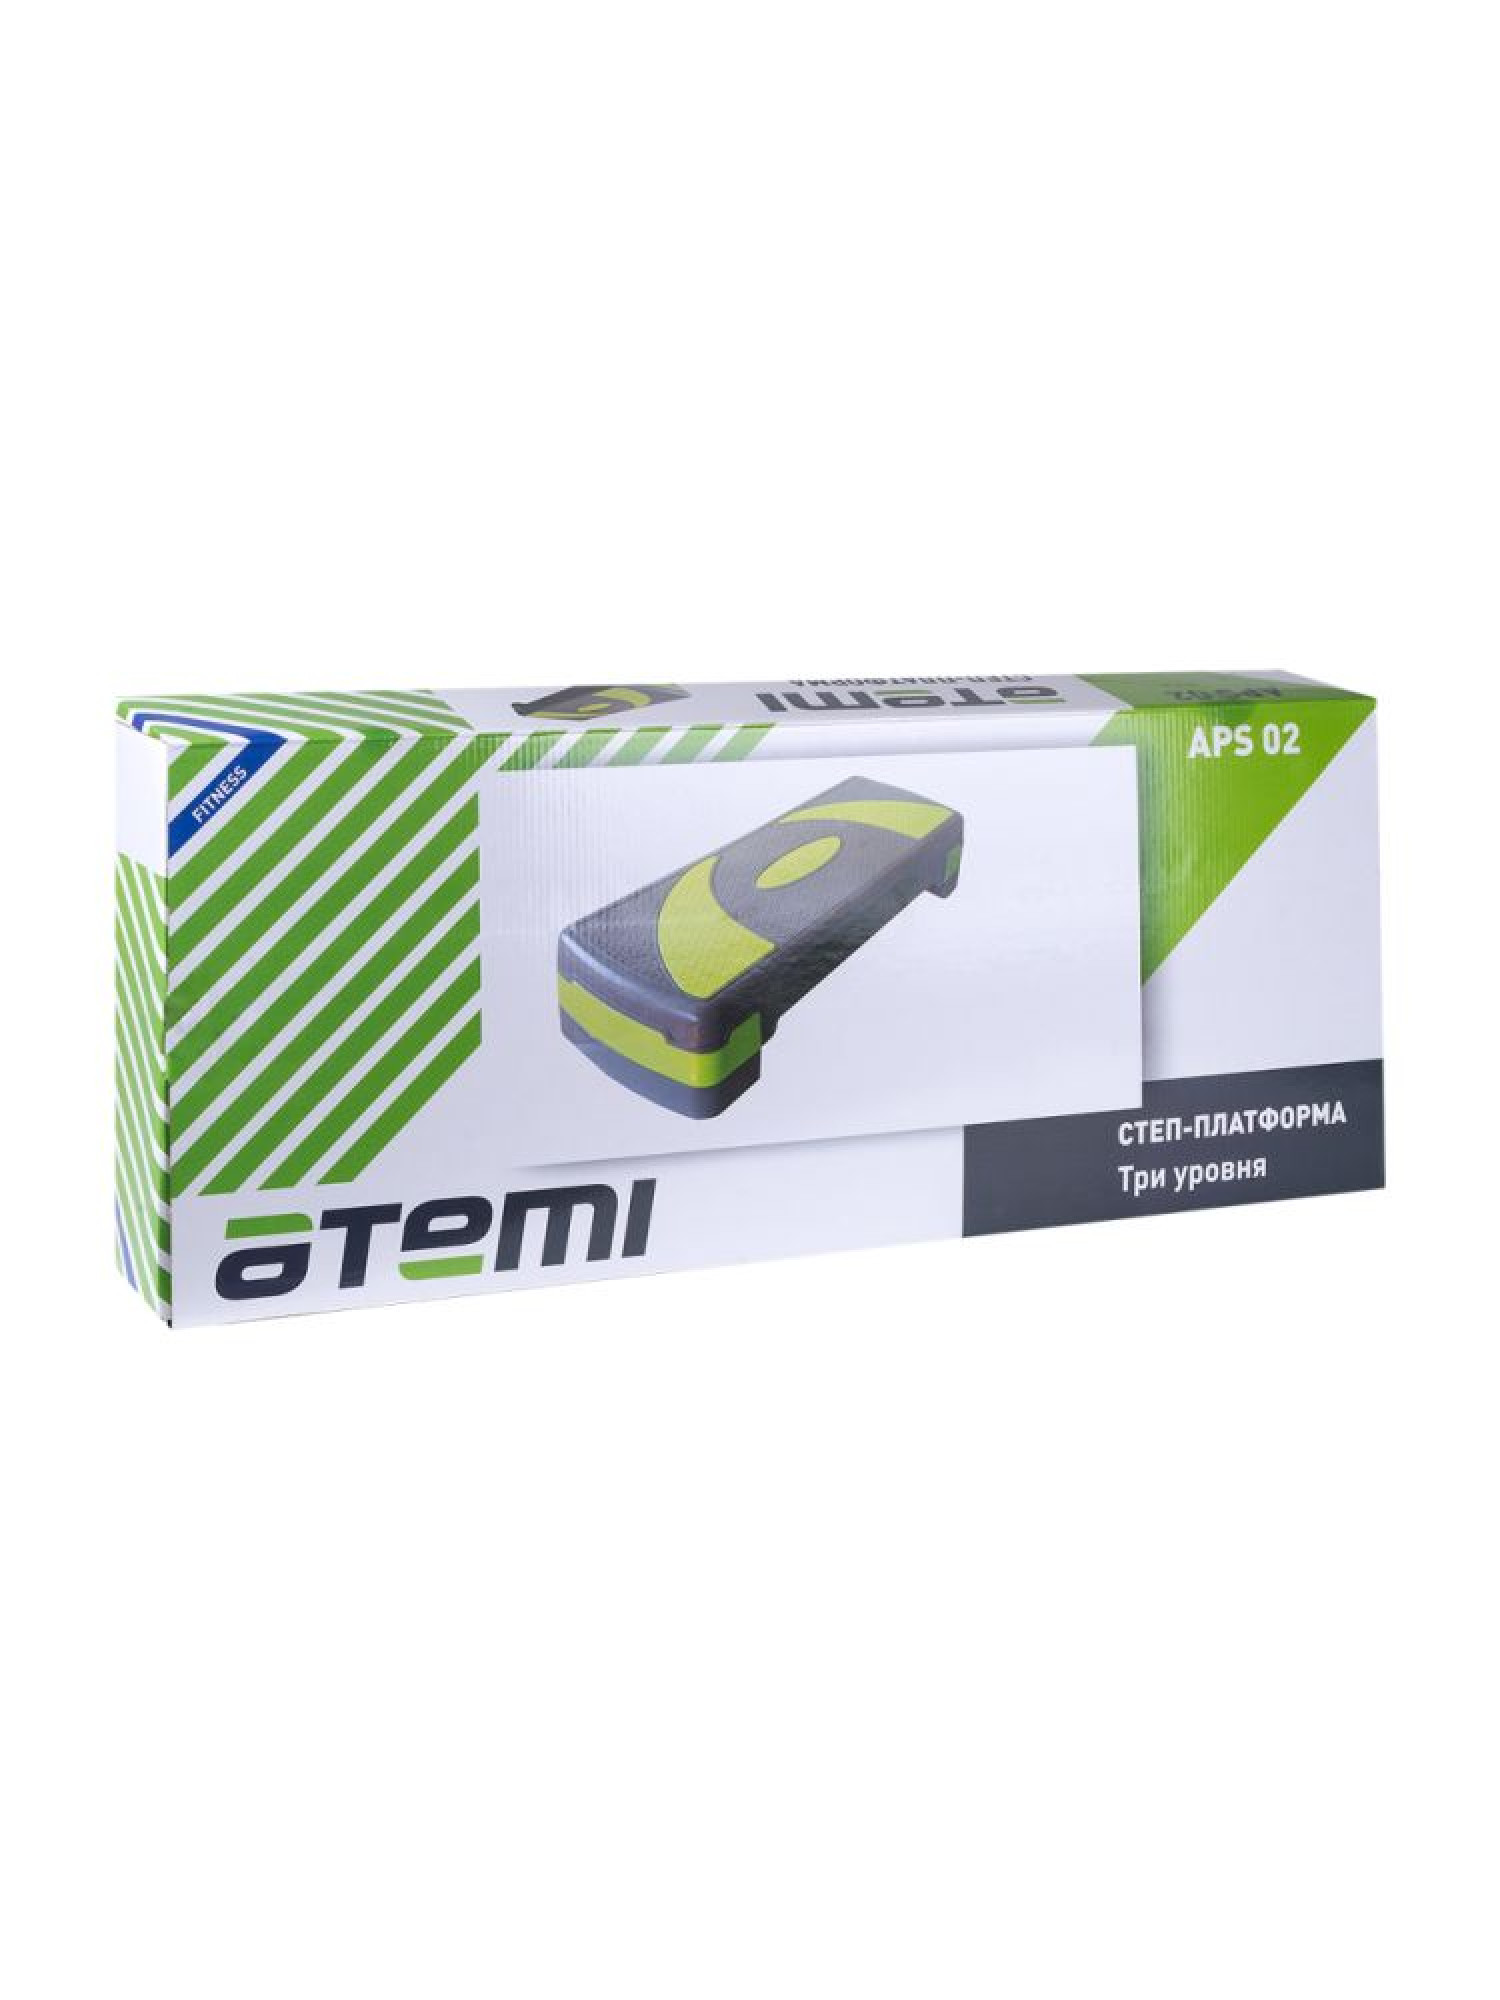 Степ-платформа Atemi APS02